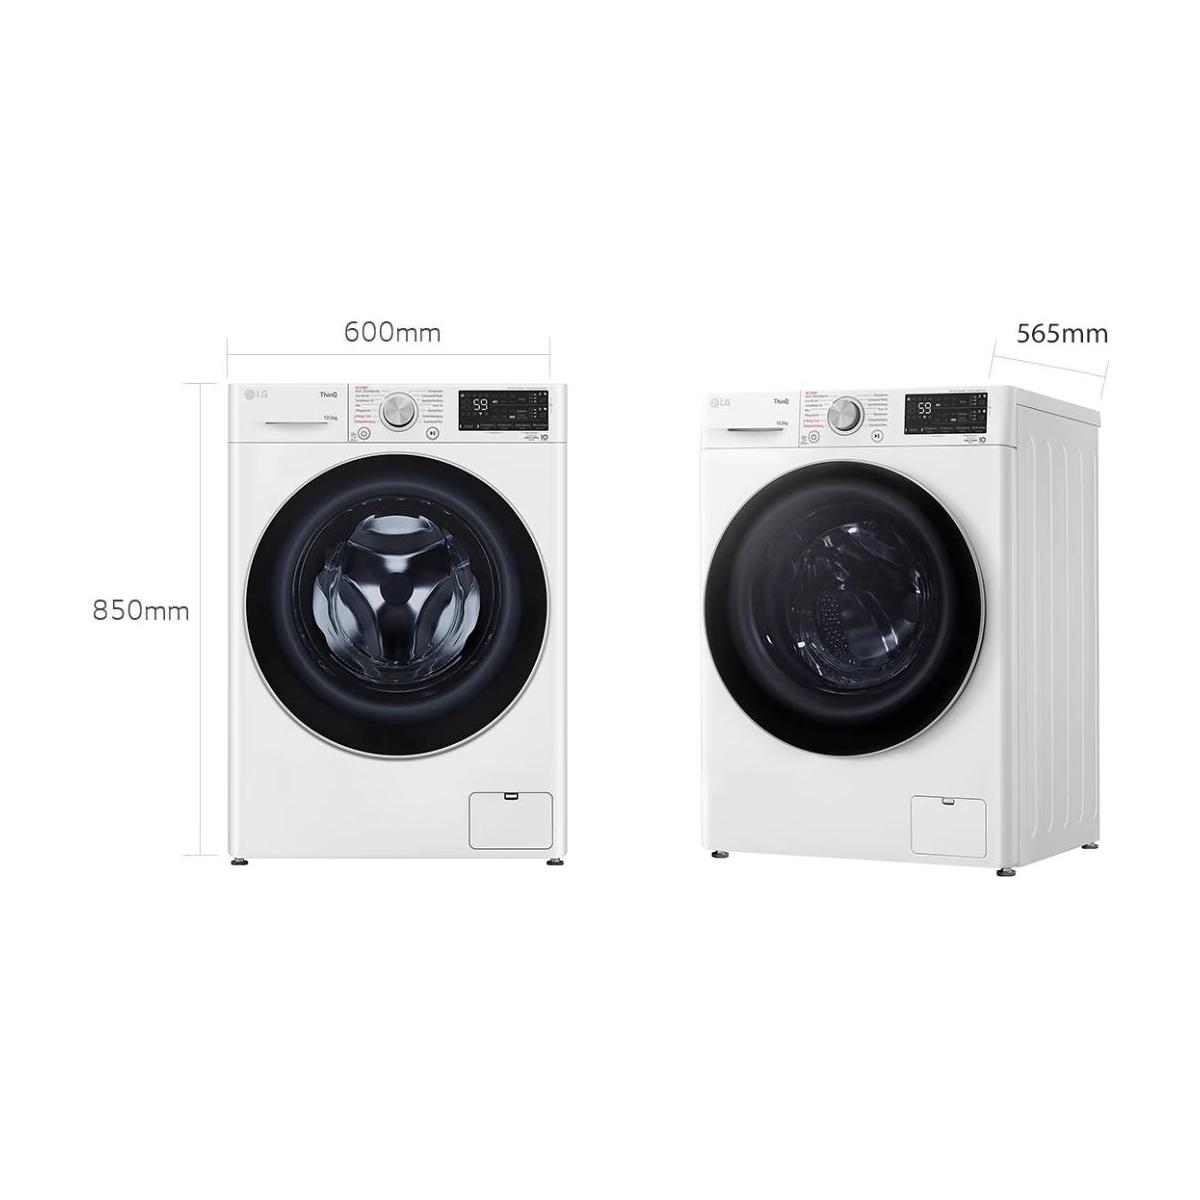 LG F4WV75X1 Wagner 60 Elektroshop Aqua breit, weiß Waschmaschine, Autodosierung, Kindersicherung, cm Mengenautomatik, Lock, 10,5kg Frontlader